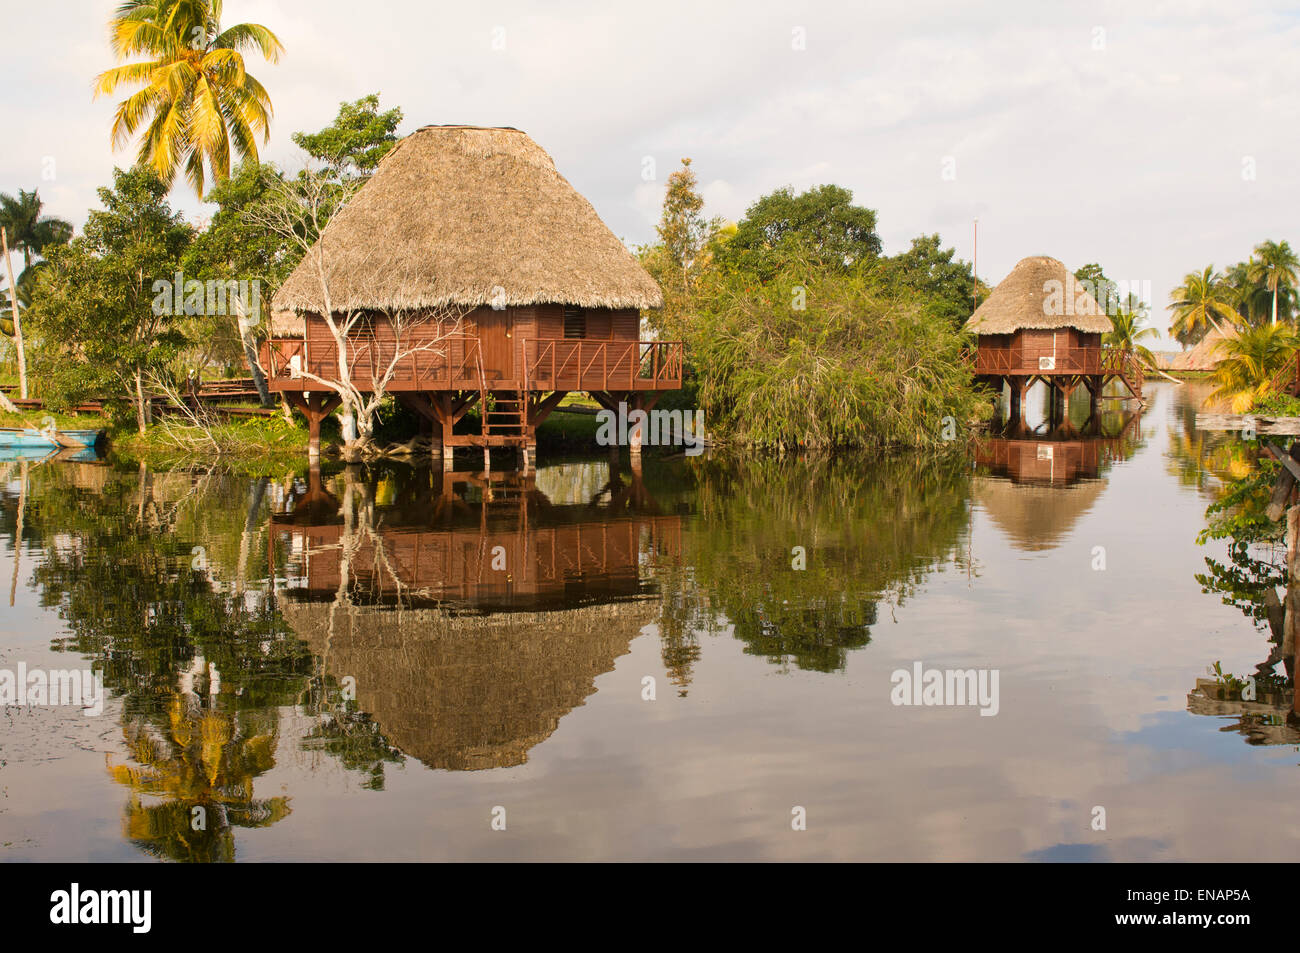 Laguna del Tesoro, Treasure Lagoon, Palm trees and wooden cabins, Zapata Peninsula, Cuba, Central America Stock Photo